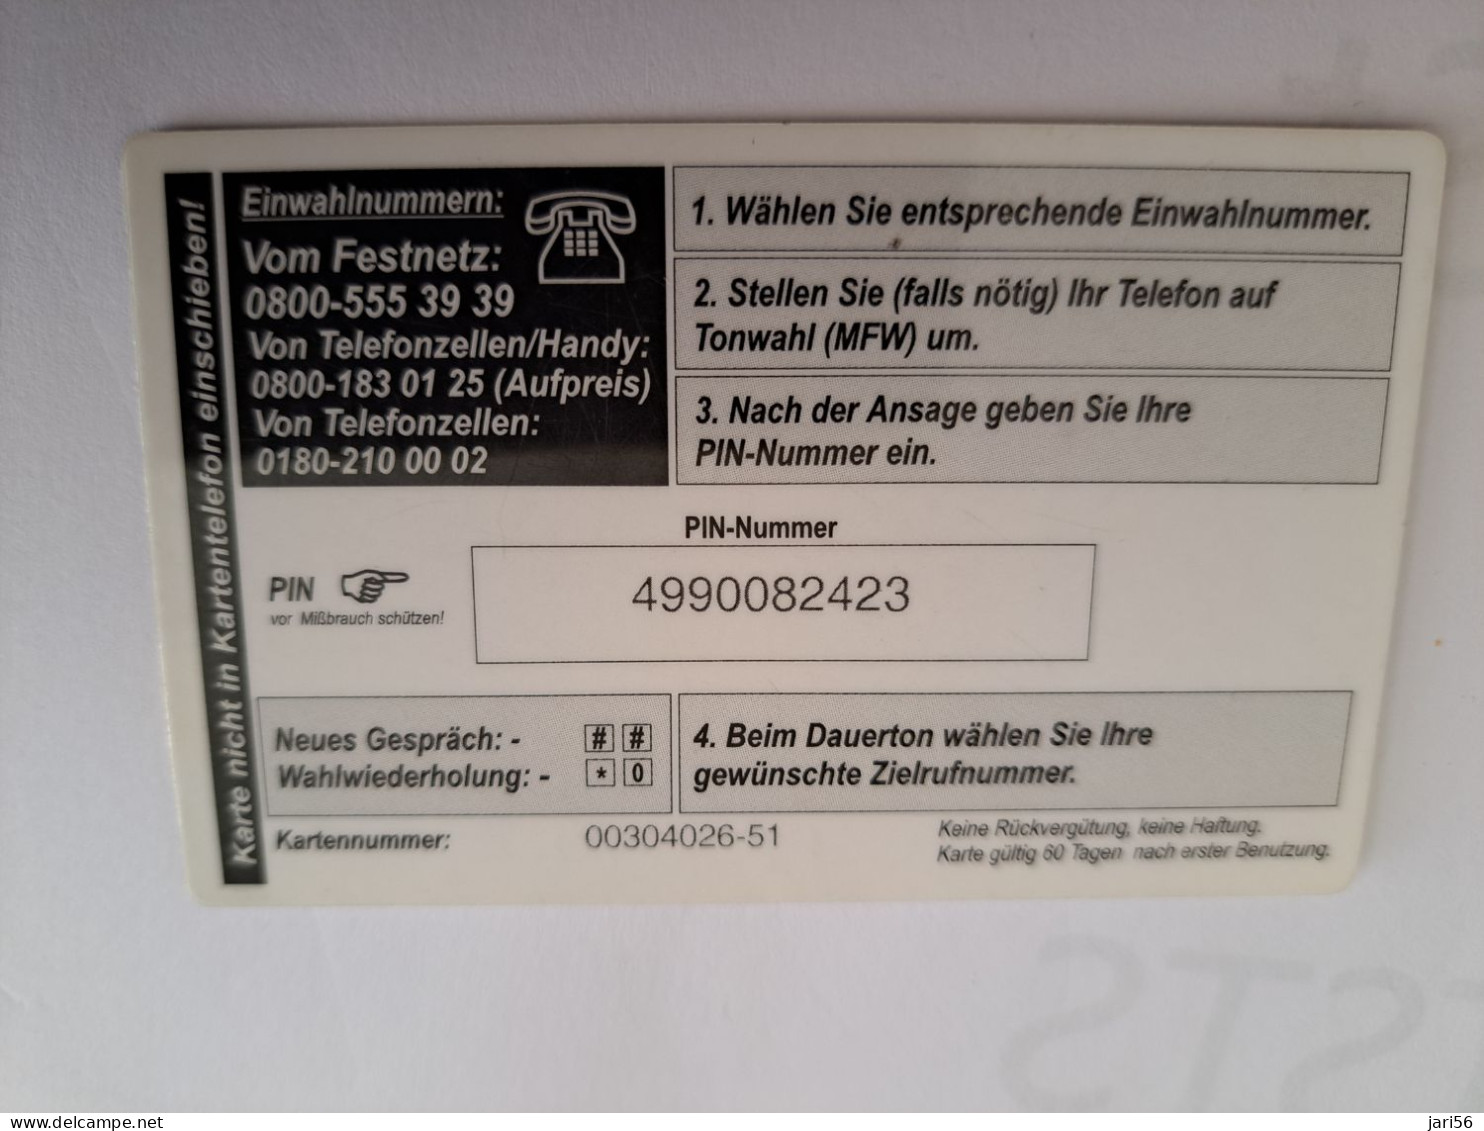 DUITSLAND/GERMANY  € 5,- / TELE MONEY/ BANKNOTES & COINS ON CARD        Fine Used  PREPAID  **16528** - GSM, Voorafbetaald & Herlaadbare Kaarten